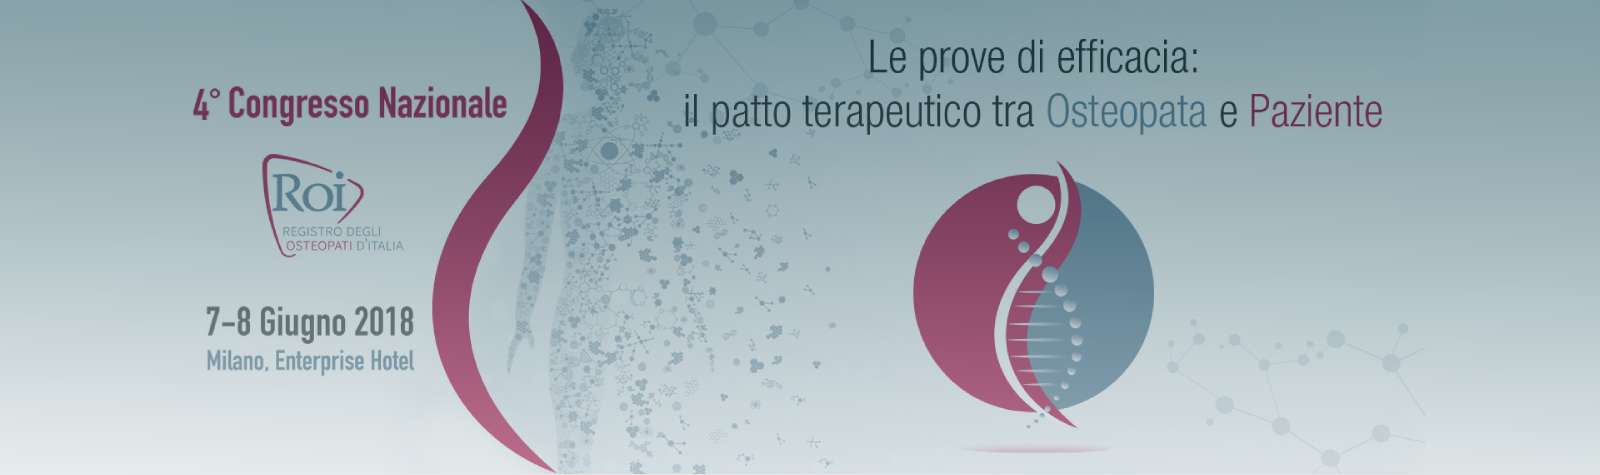 Partecipazione al 4 Congresso Nazionale ROI (Registro degli Osteopati d’Italia)